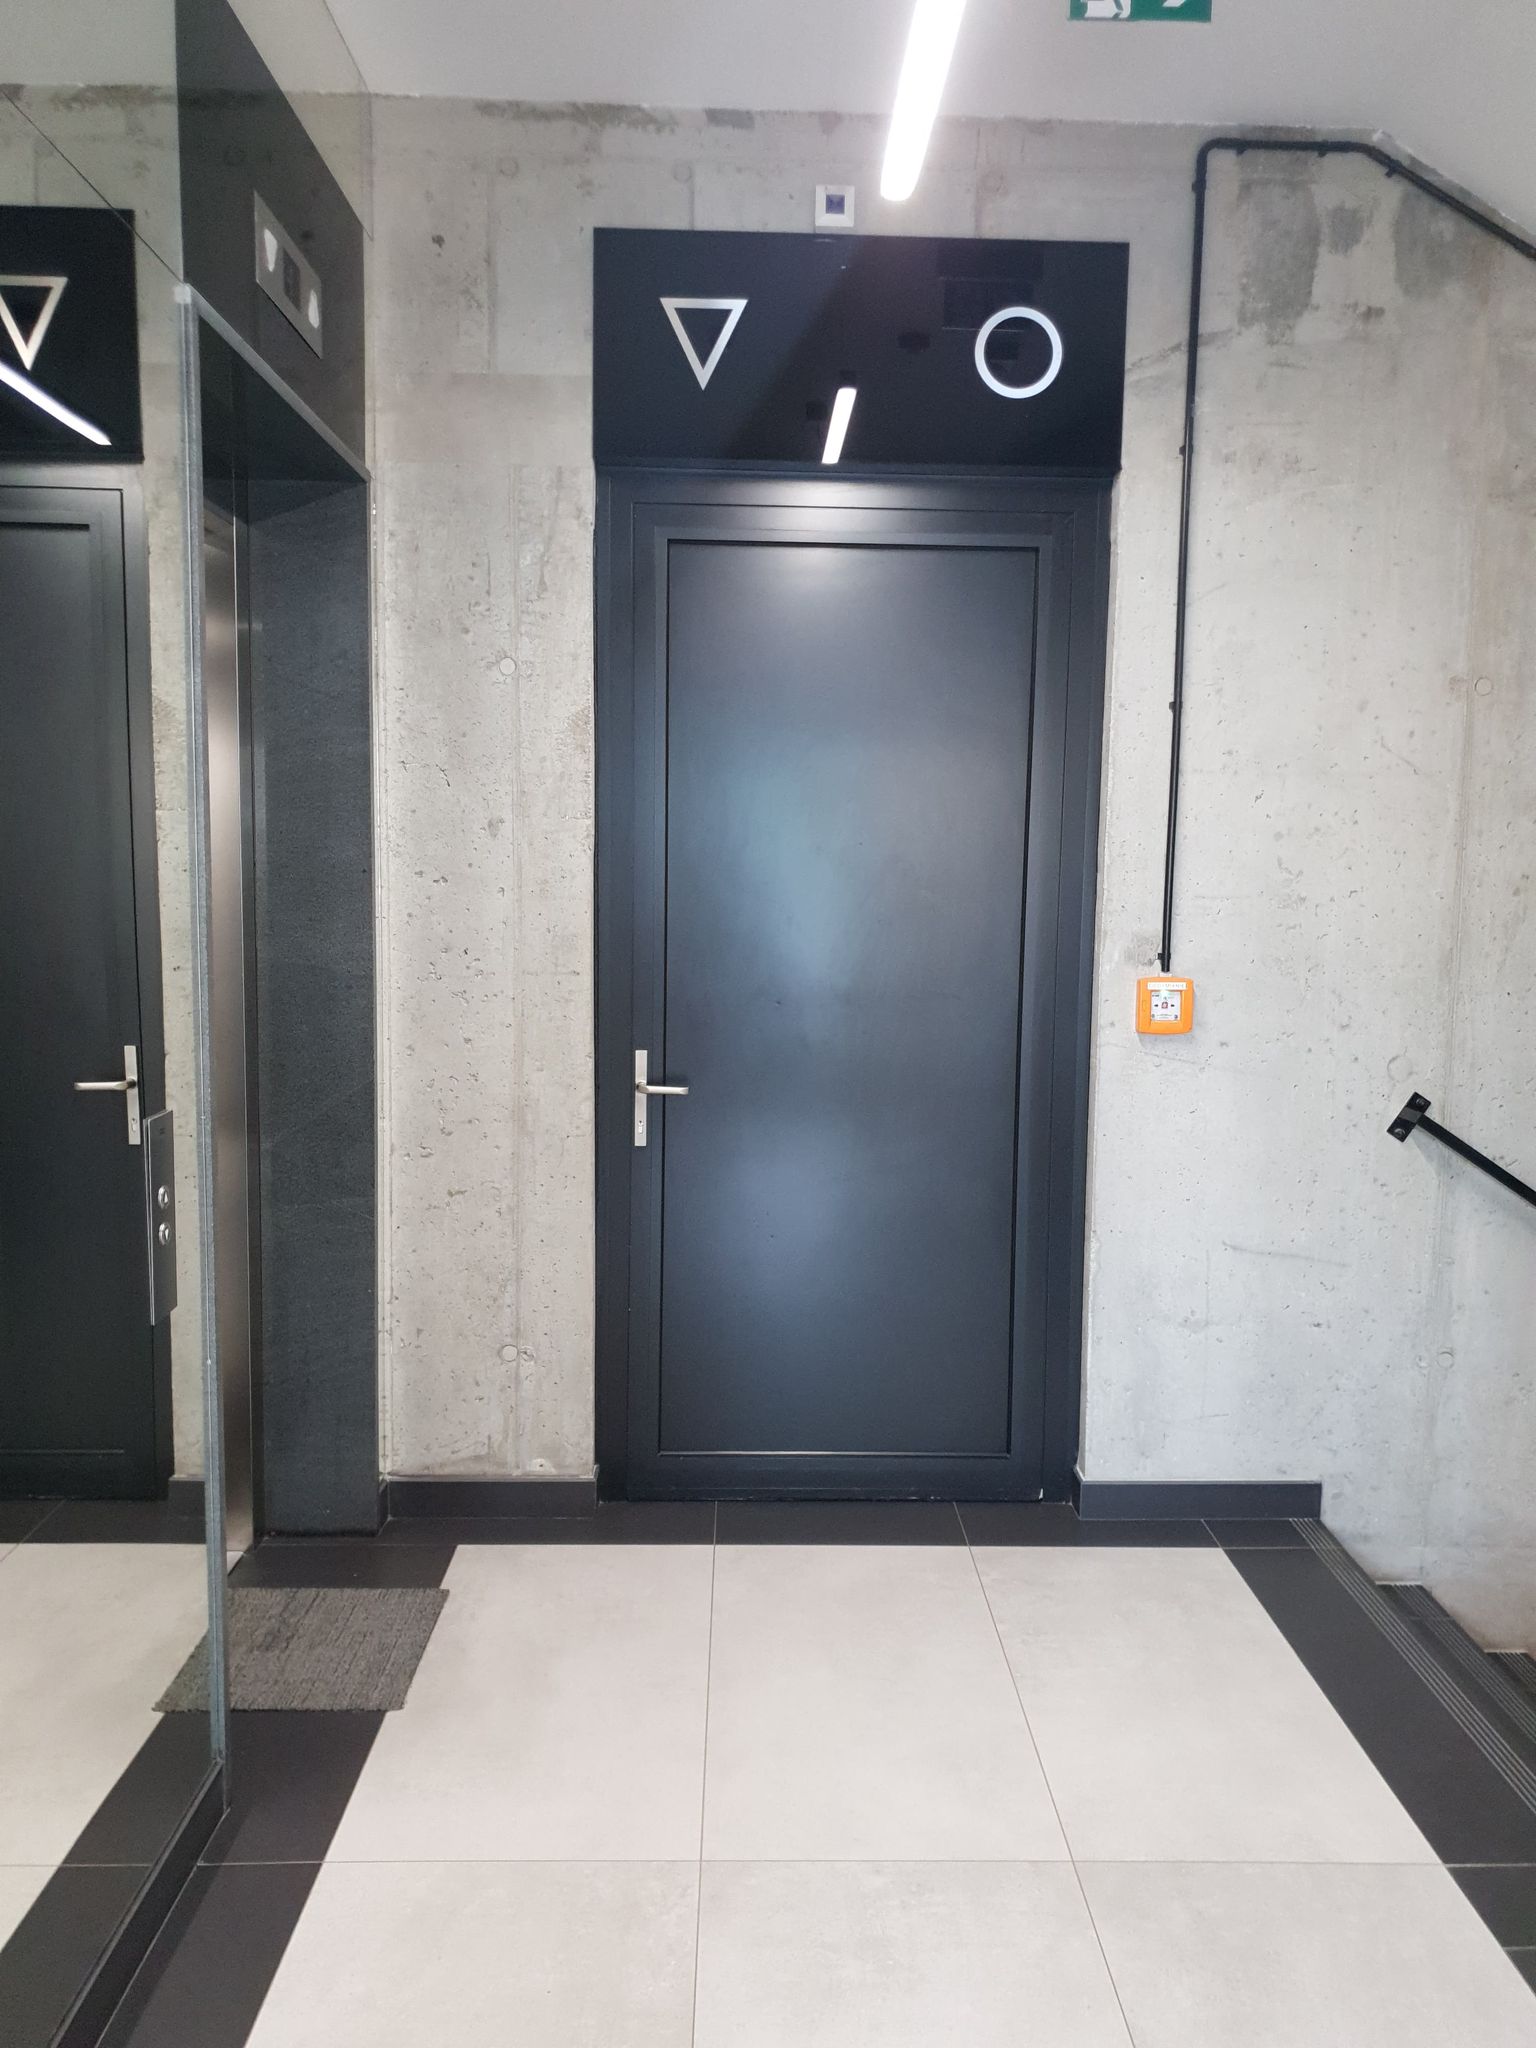 Na tle szarej ściany czarne drzwi, nad nimi oznaczenie piktogramami toalety damskiej i męskiej. Po lewej stronie od drzwi do toalety, widoczne drzwi szybu windy 